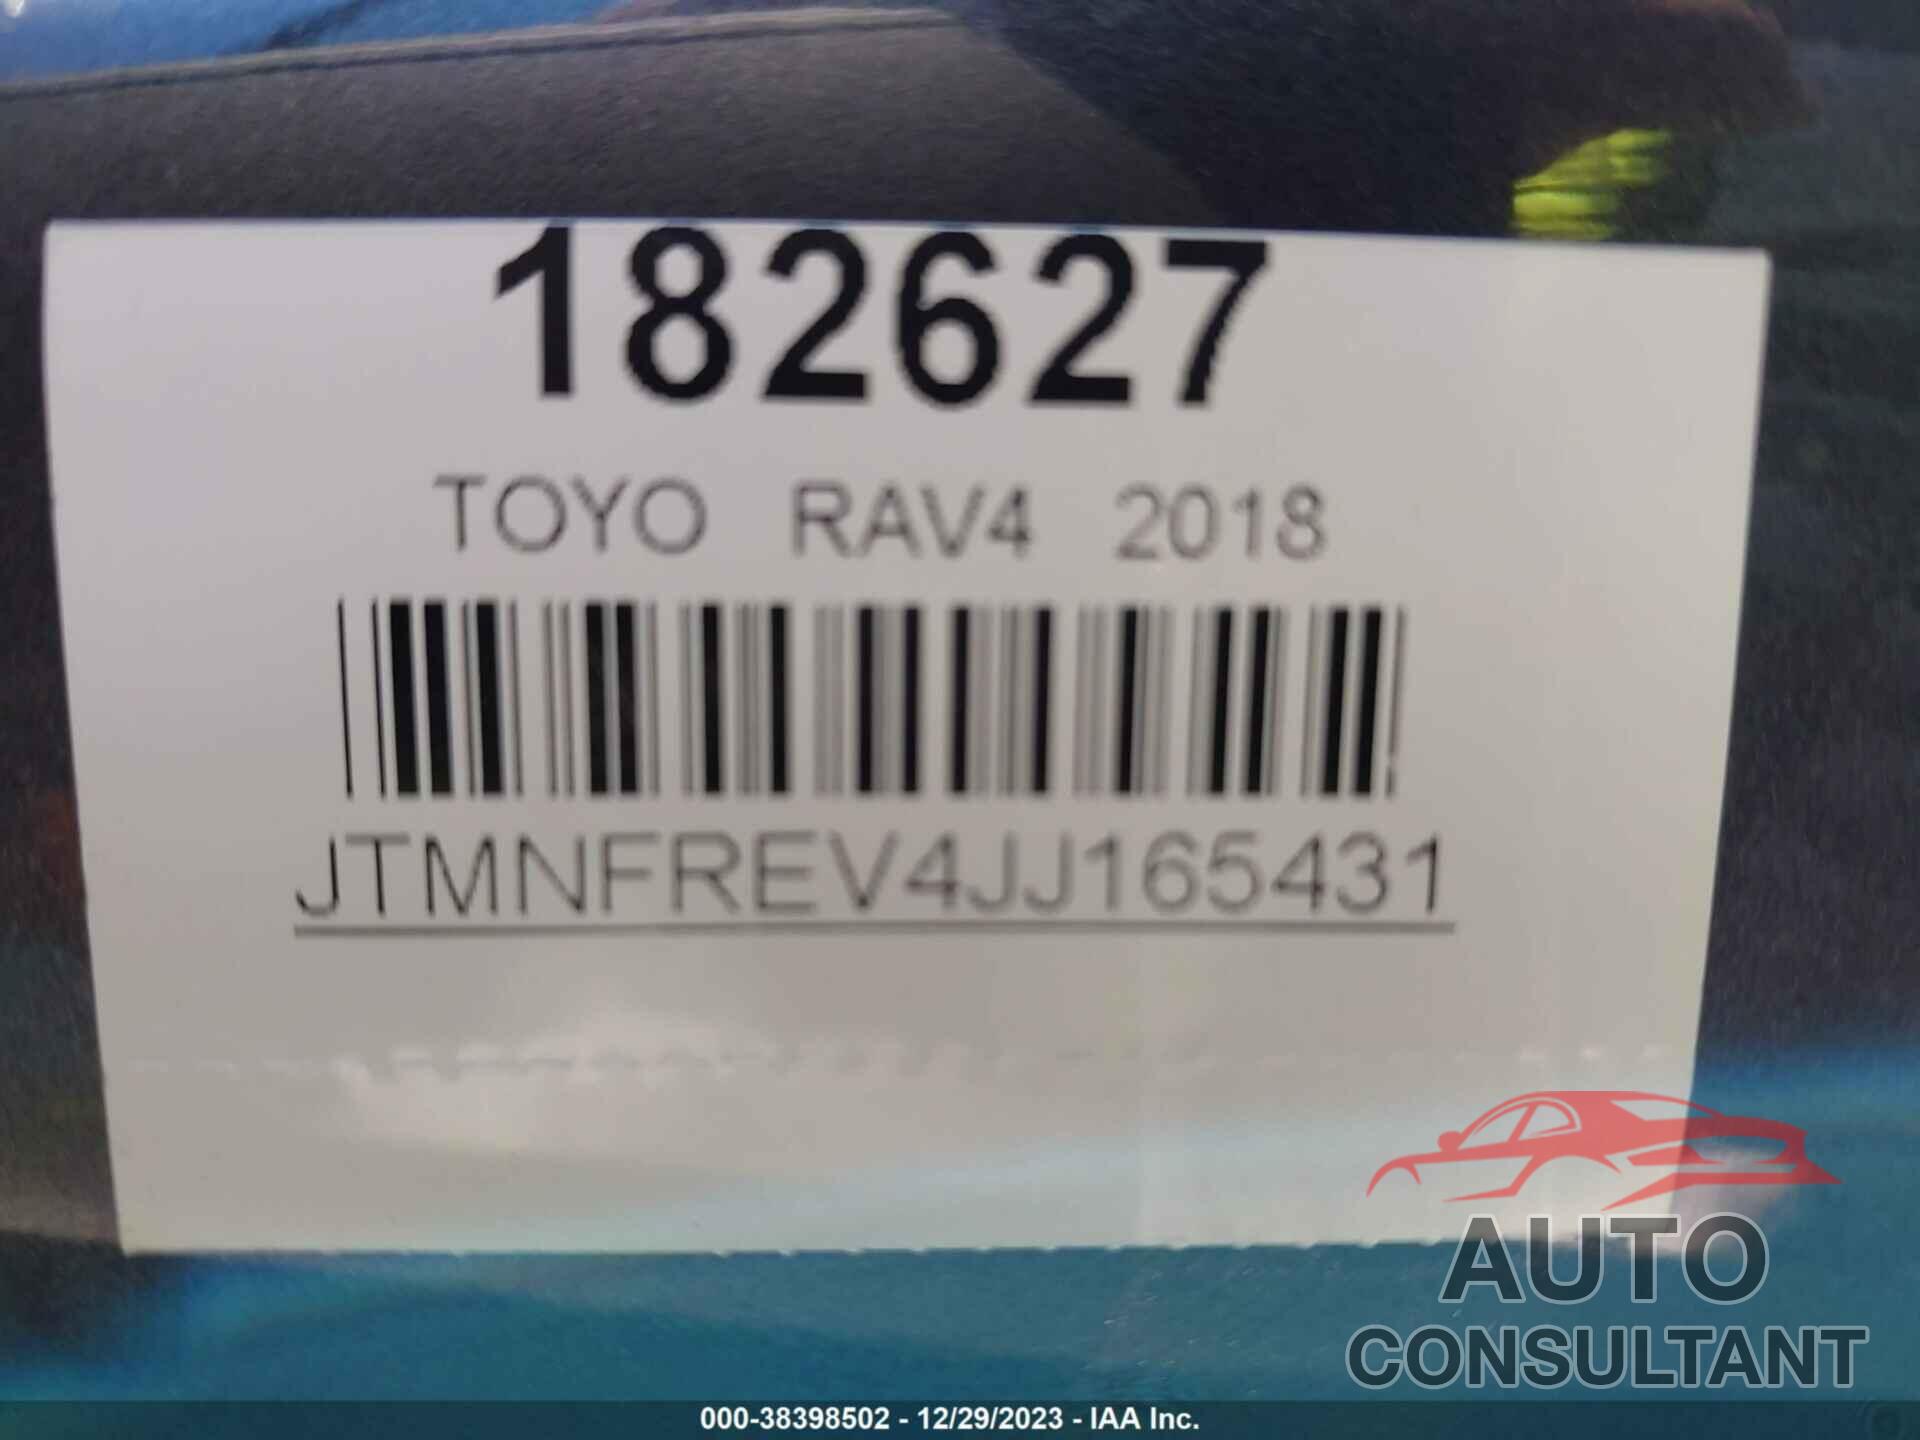 TOYOTA RAV4 2018 - 0JTMNFREV4JJ16543